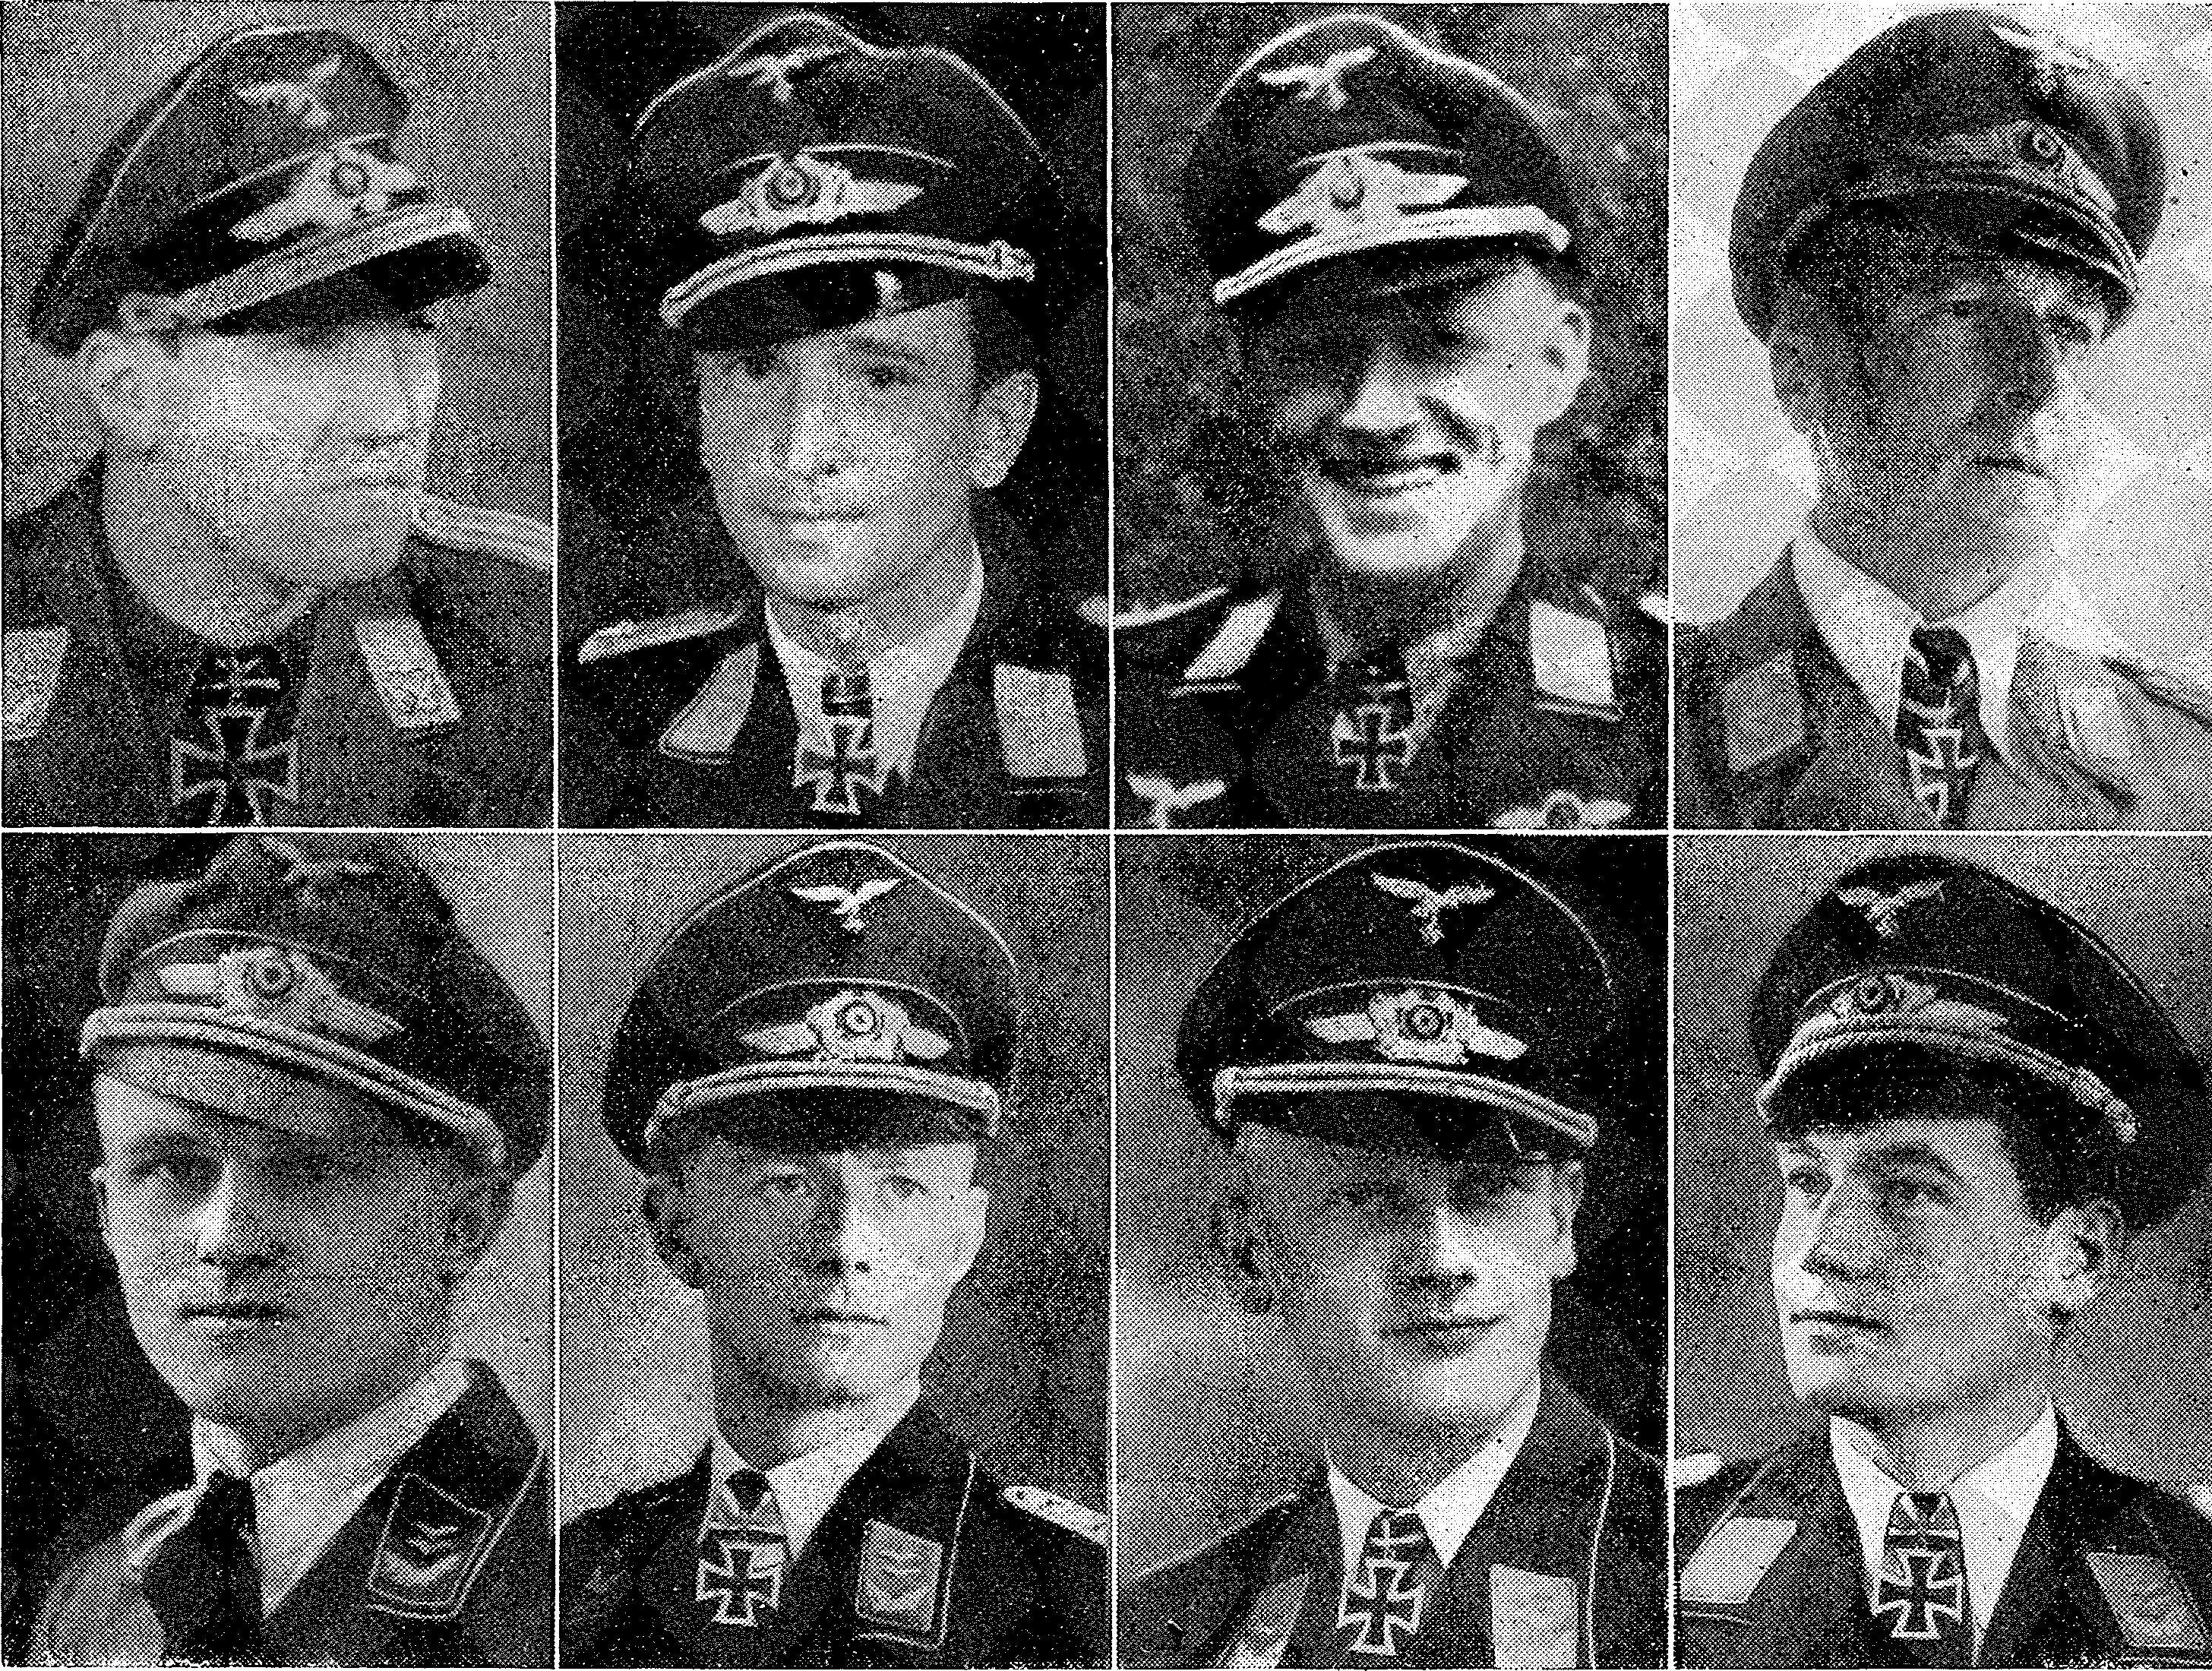 Luftfahrt und Luftwaffe im Zweiten Weltkrieg 1943